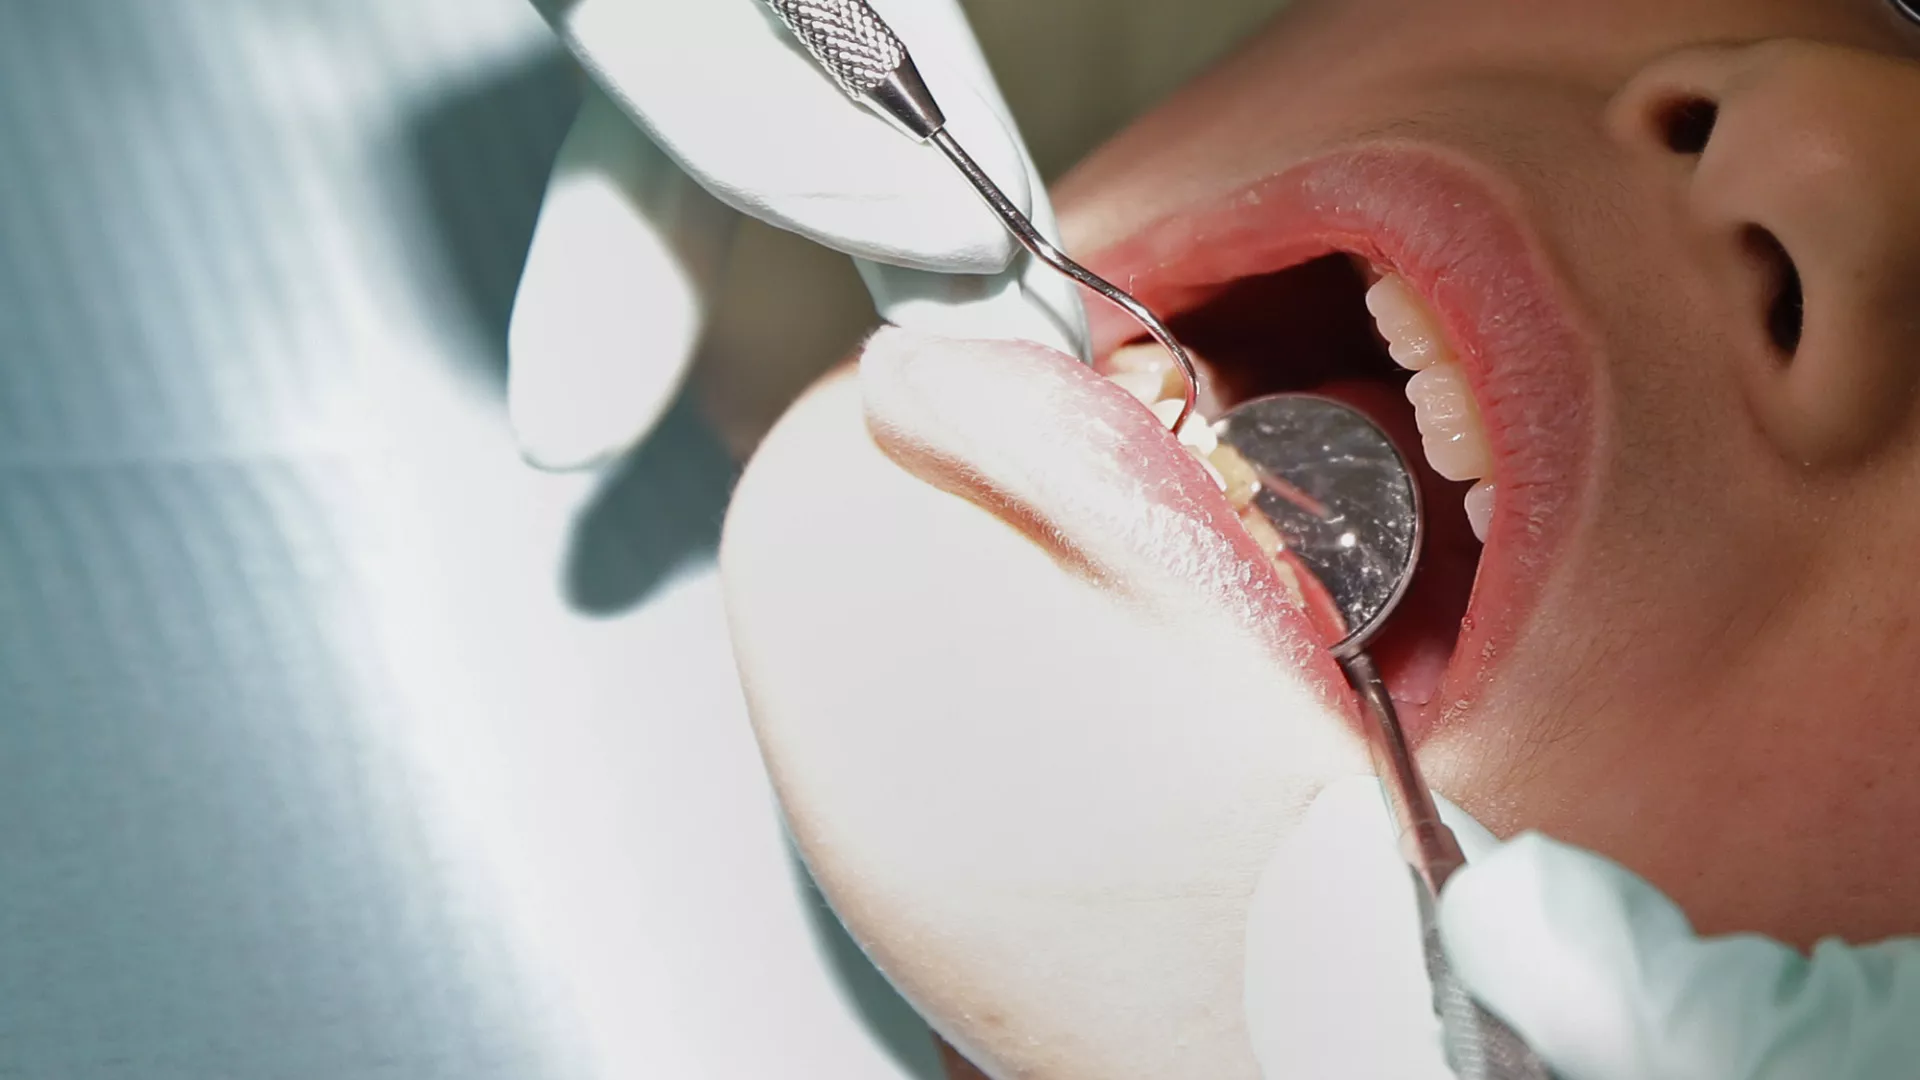 Politikë e BE: Ligjvënësit bien dakord të ndalojnë merkurin në mbushjen e dhëmbëve